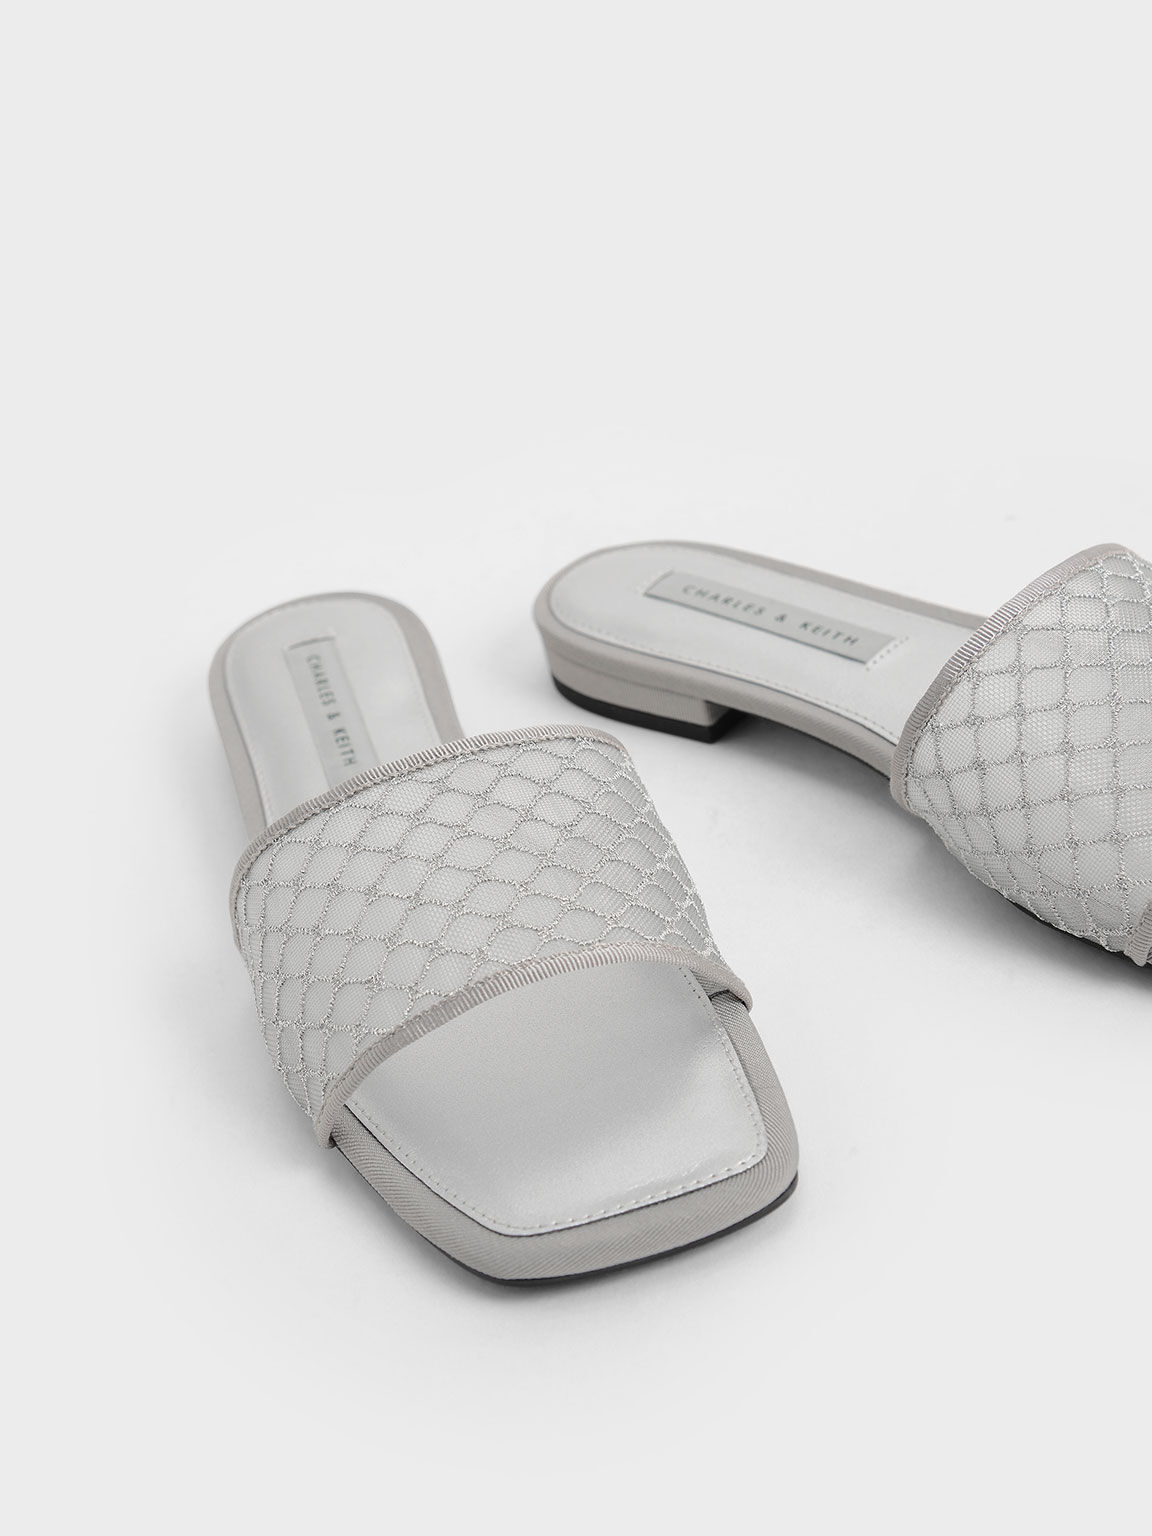 Mesh & Grosgrain Slide Sandals, Silver, hi-res